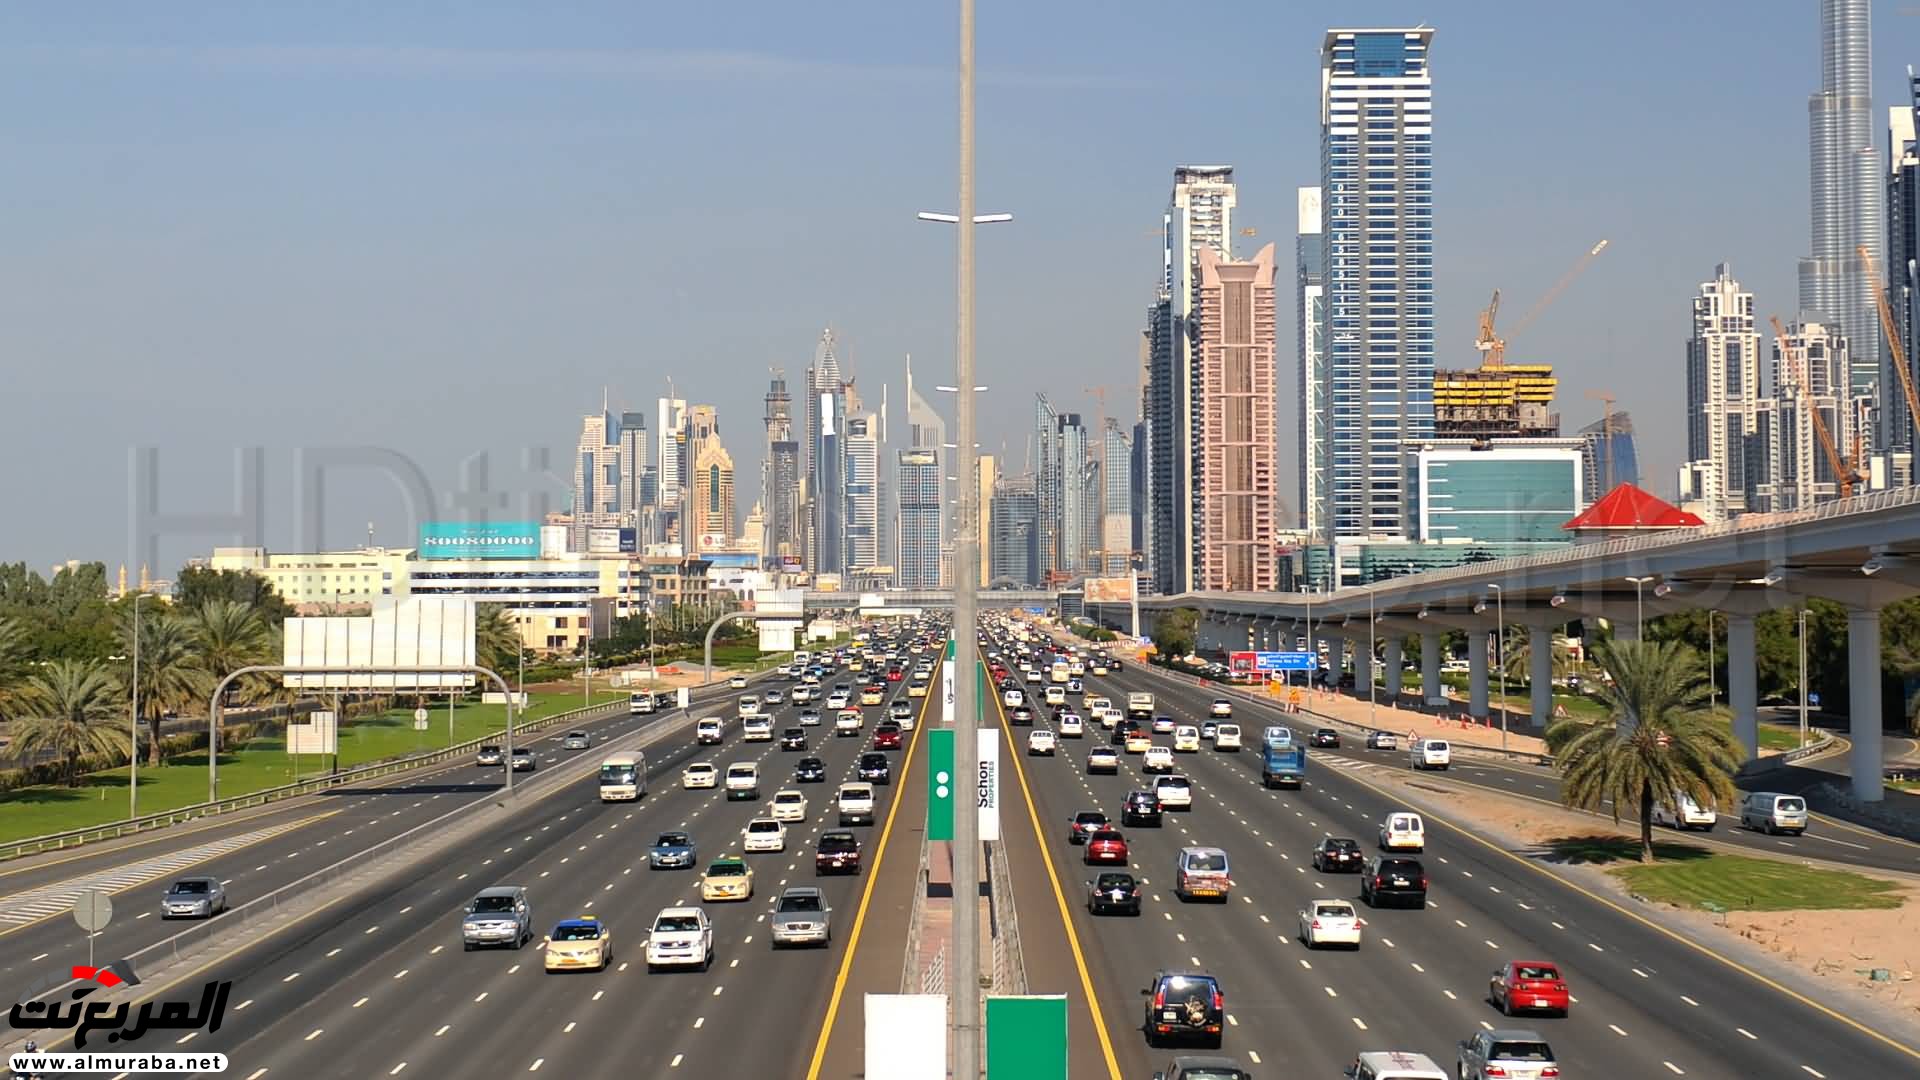 الكشف عن حزمة من المشروعات والأنظمة الذكية للحد من الحوادث في دبي 3